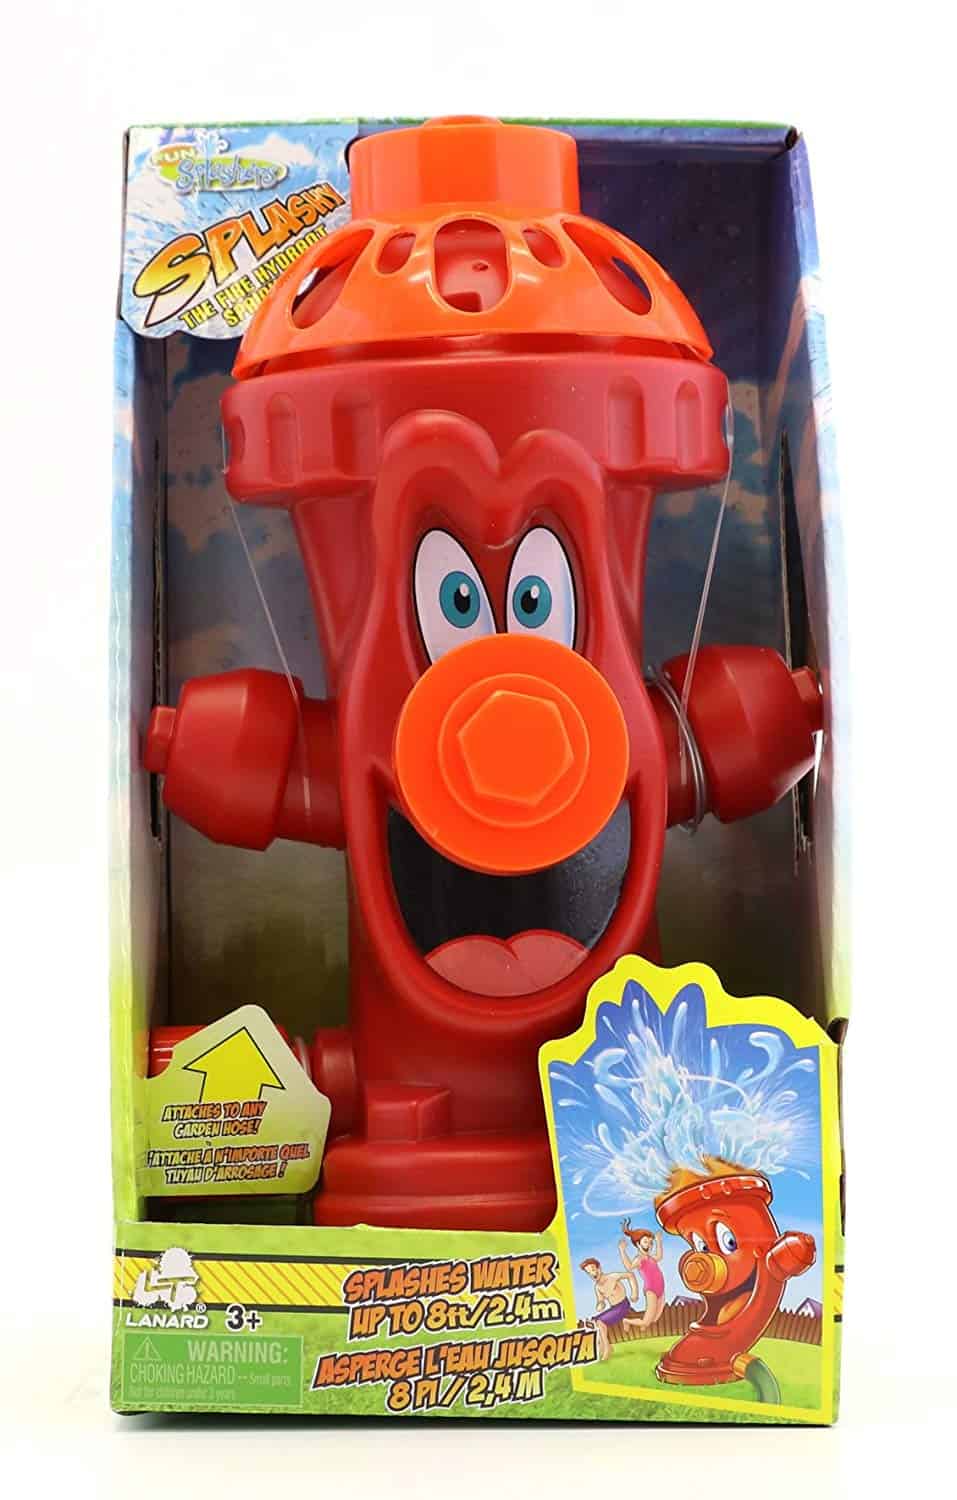 flower water sprinkler toy